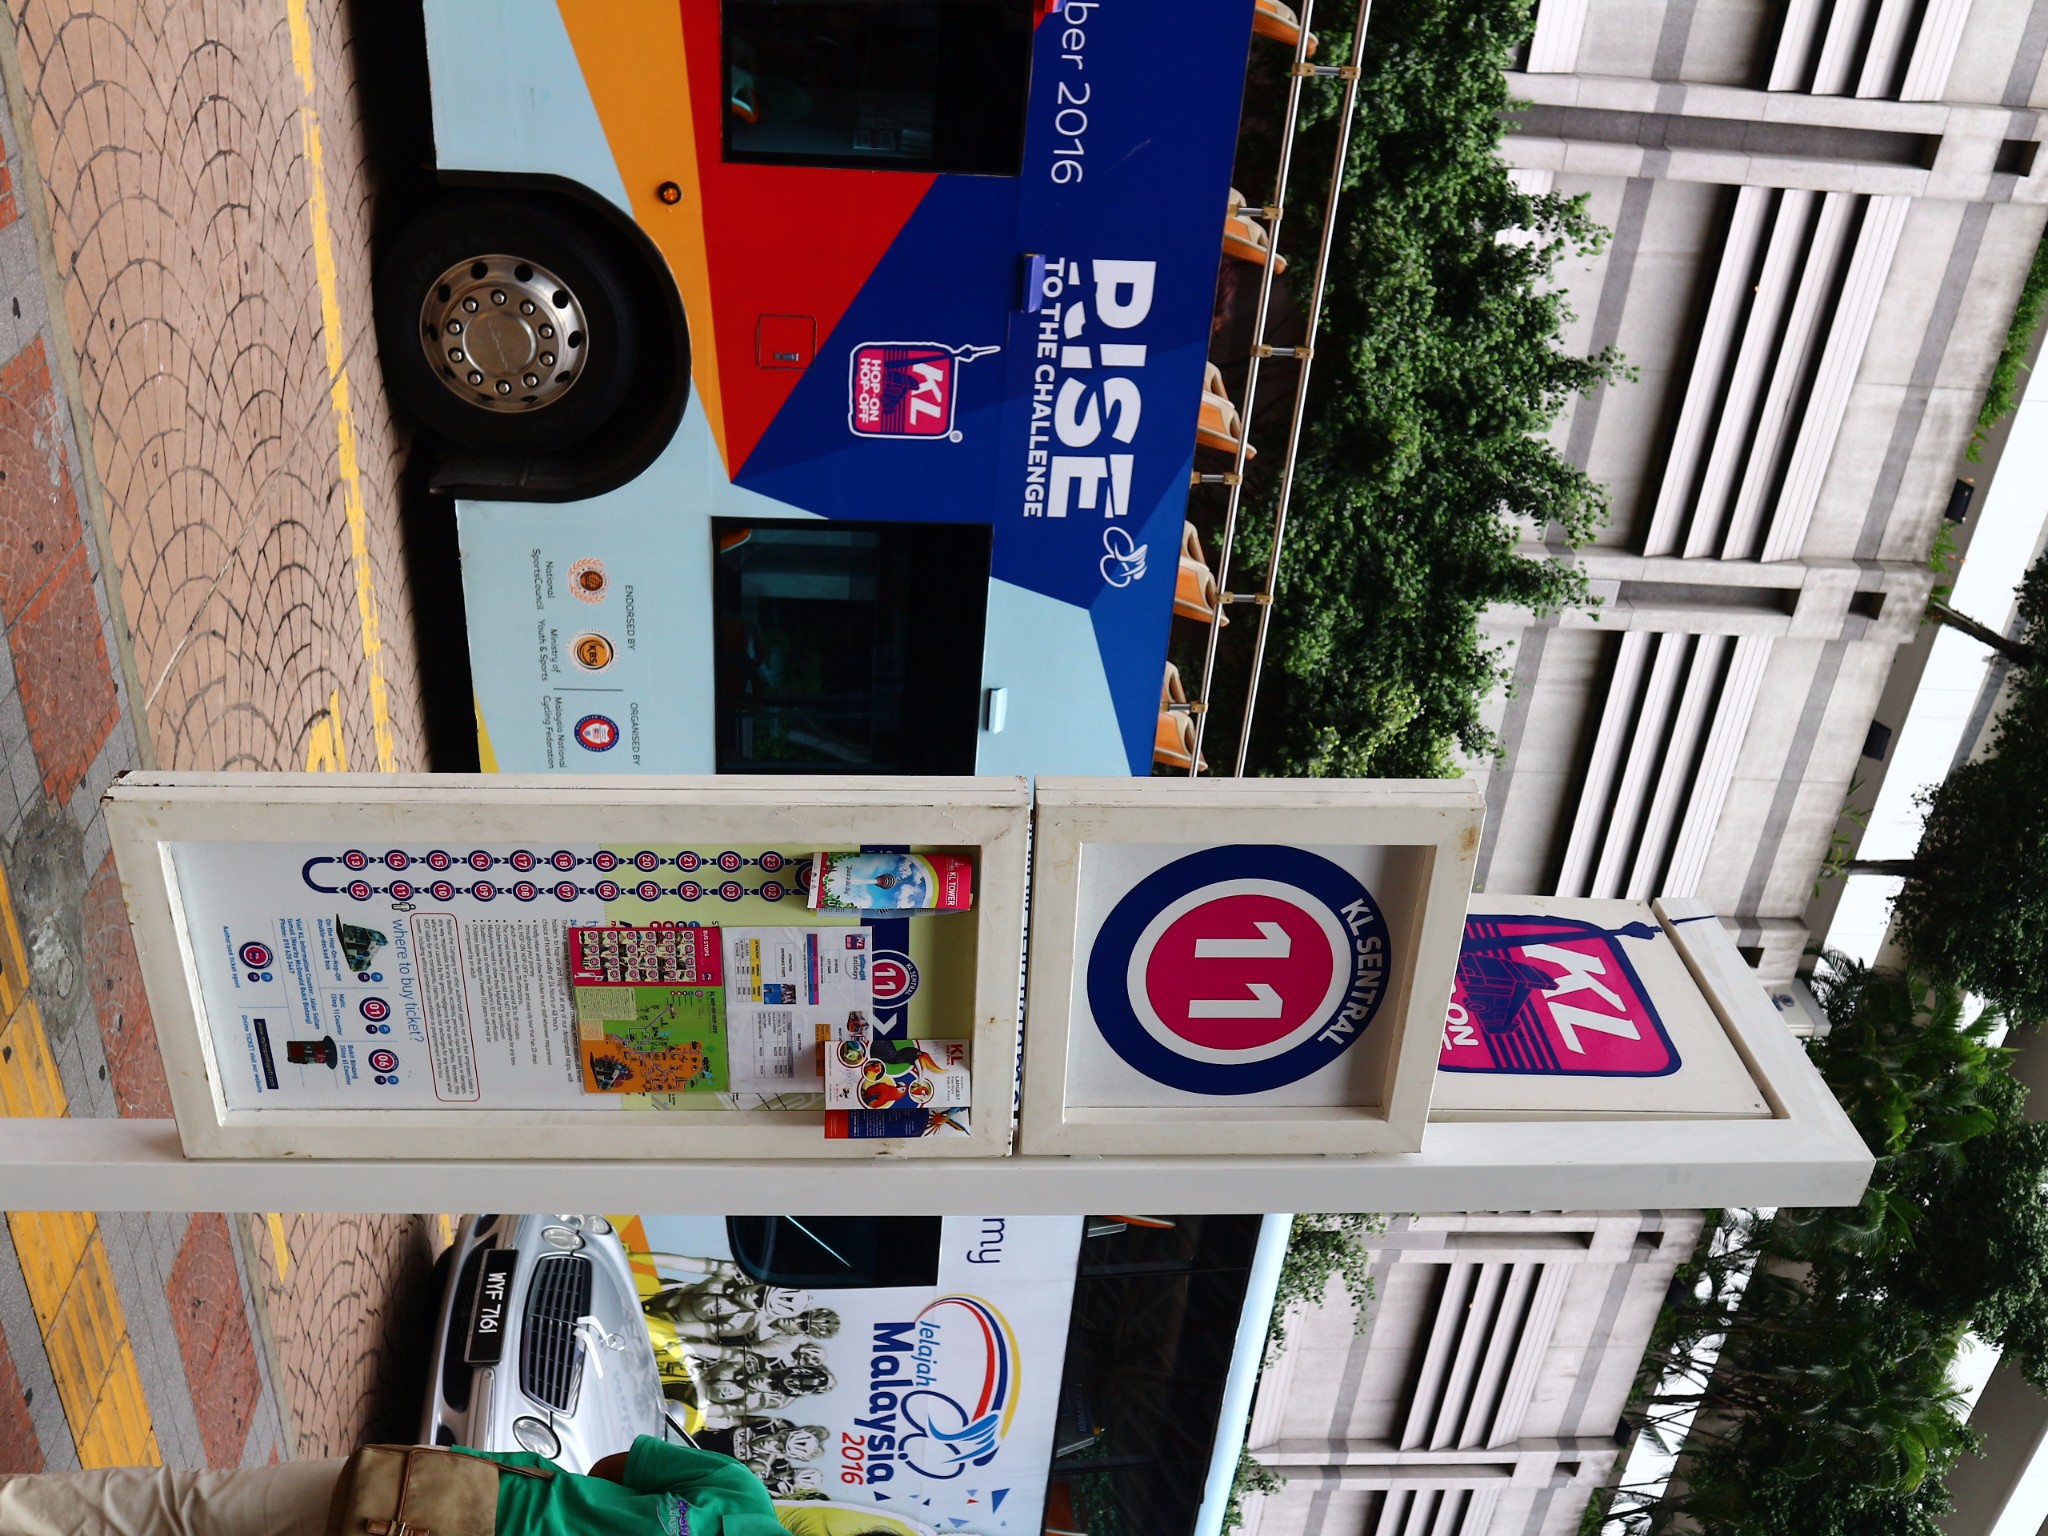 吉隆坡观光巴士路过KL SENTER?